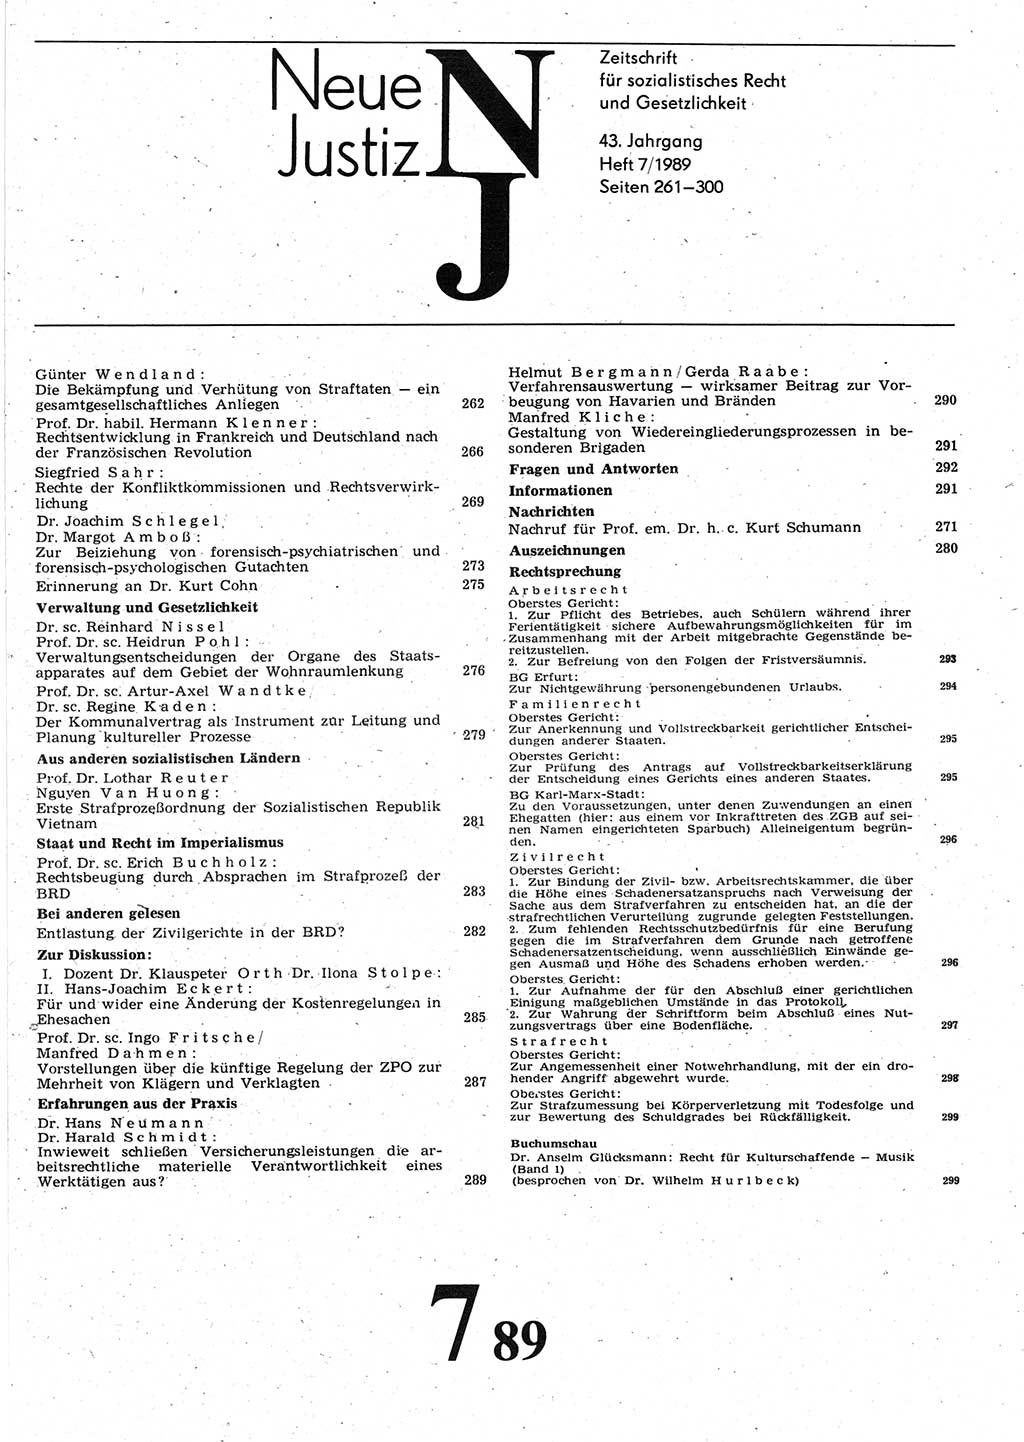 Neue Justiz (NJ), Zeitschrift für sozialistisches Recht und Gesetzlichkeit [Deutsche Demokratische Republik (DDR)], 43. Jahrgang 1989, Seite 261 (NJ DDR 1989, S. 261)